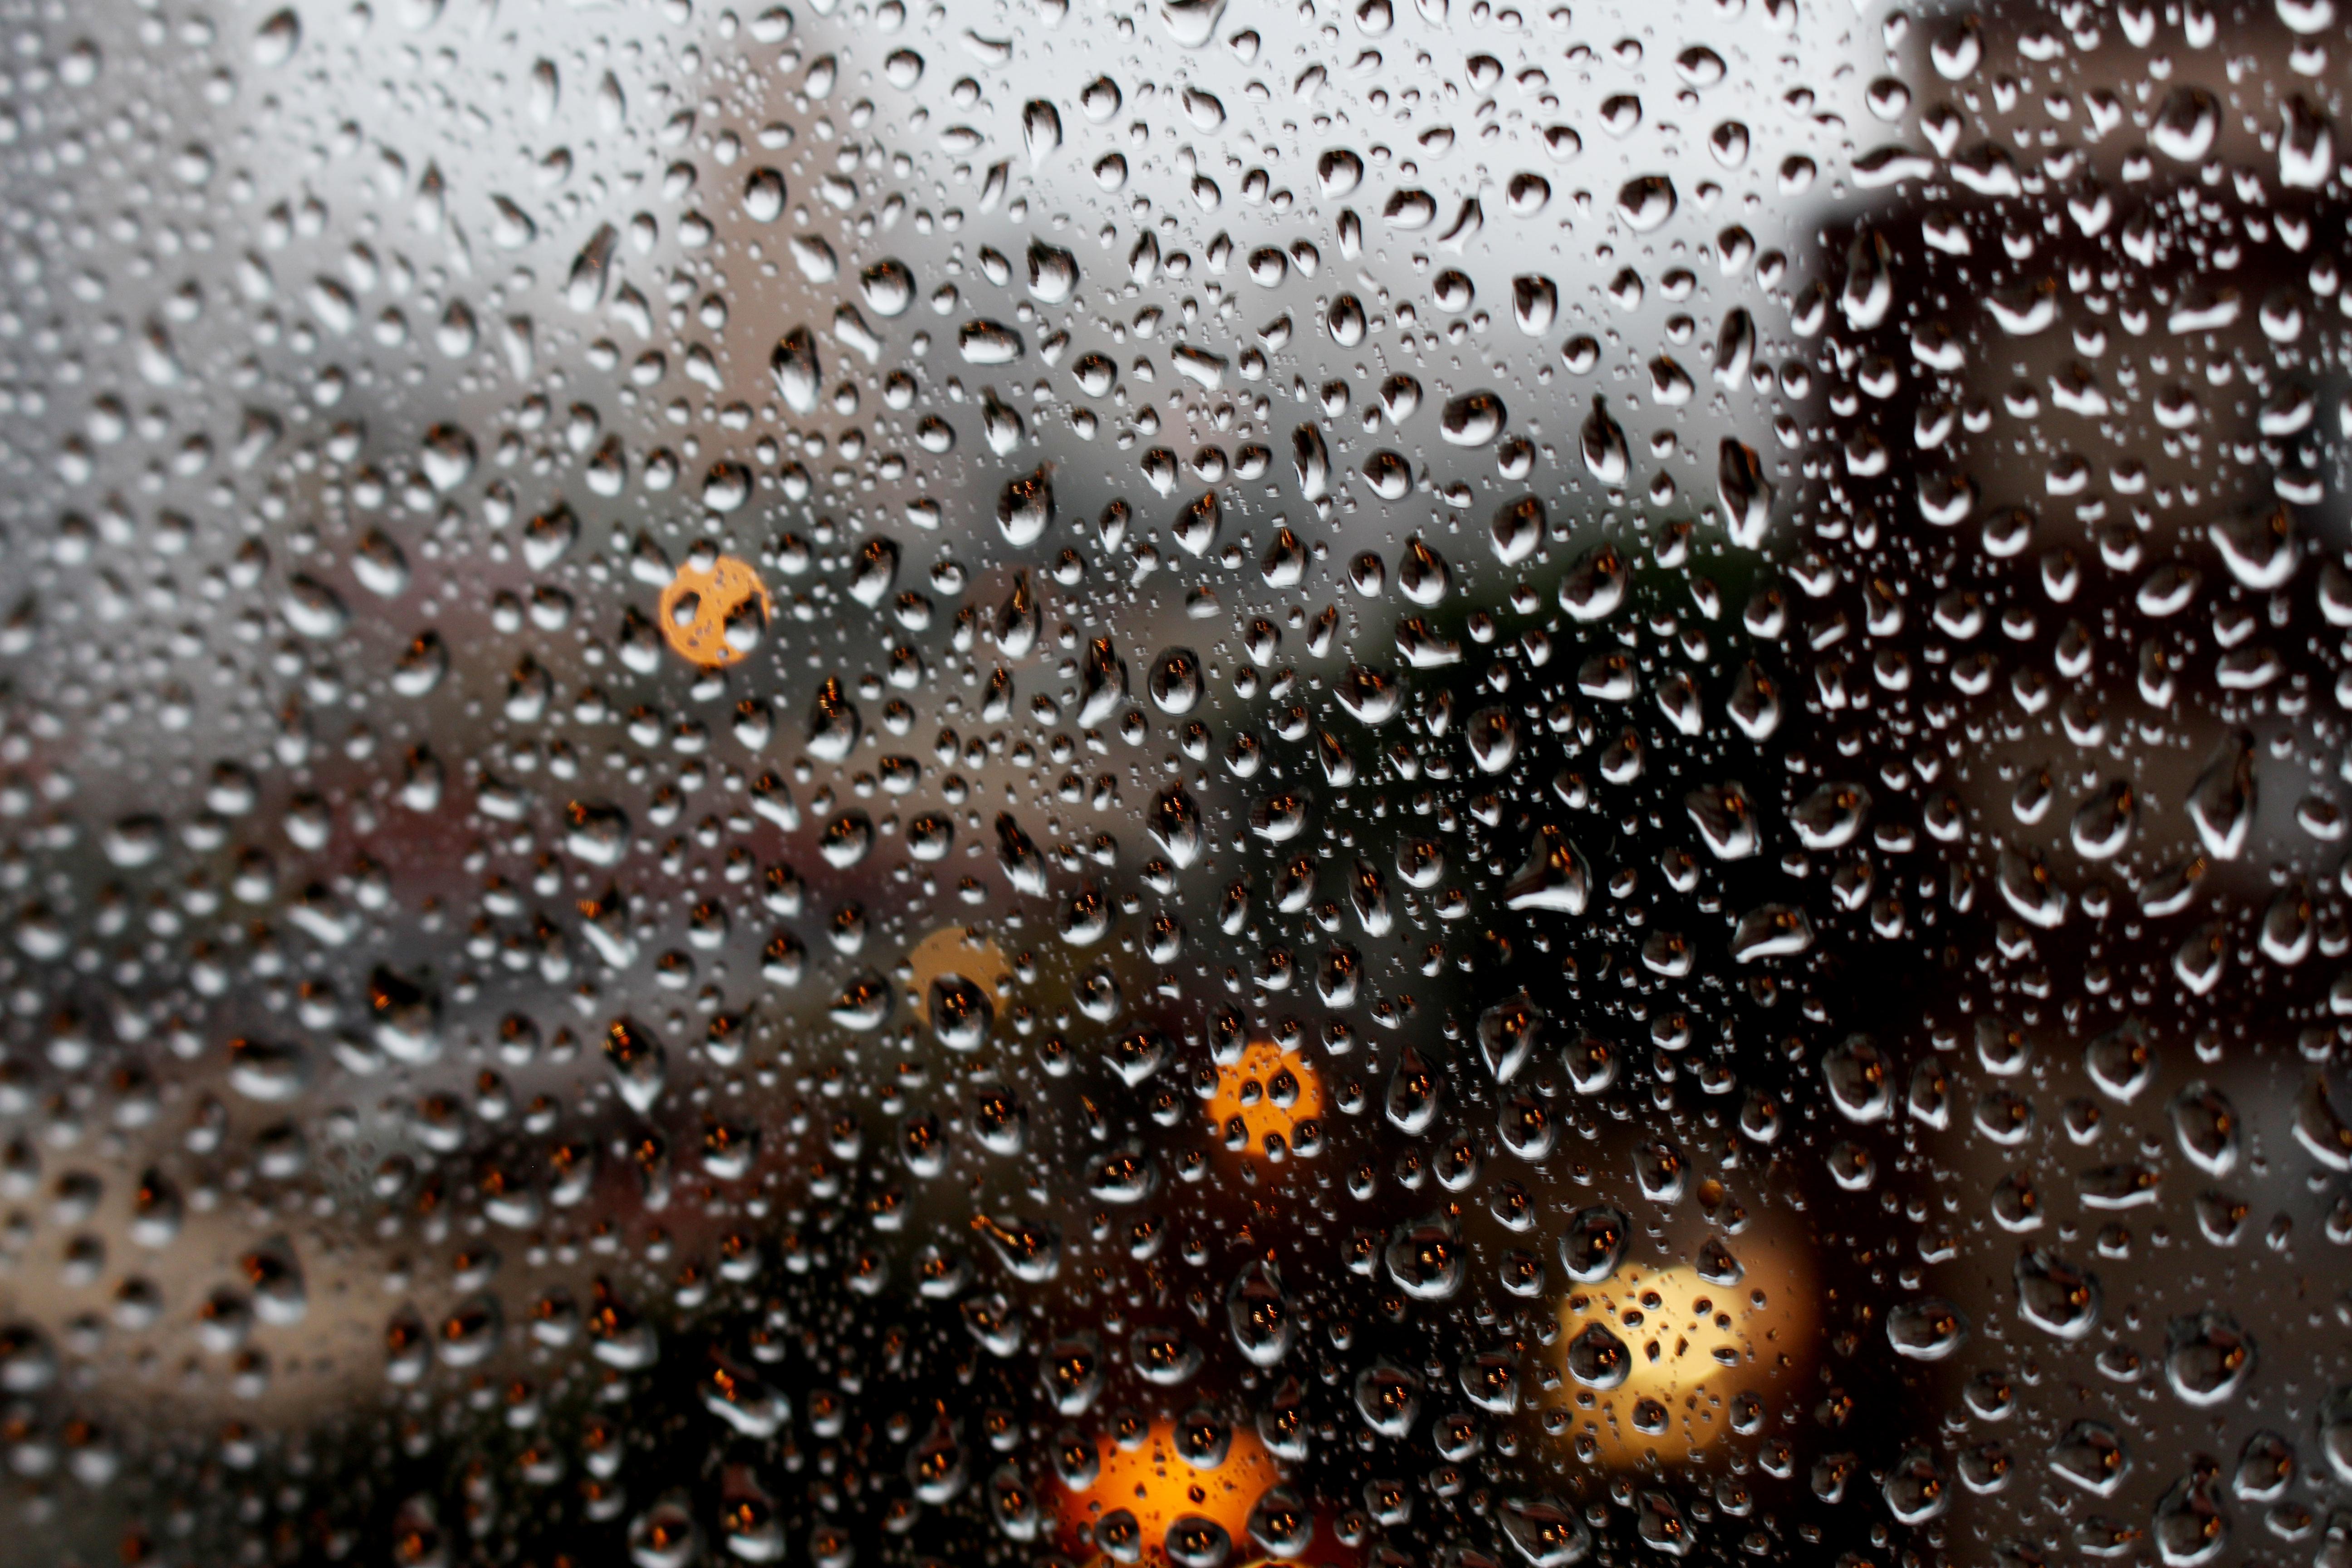 Картинка капли дождя. Капли на стекле. Капли дождя. Капли дождя на стекле. Дождевые капли на стекле.